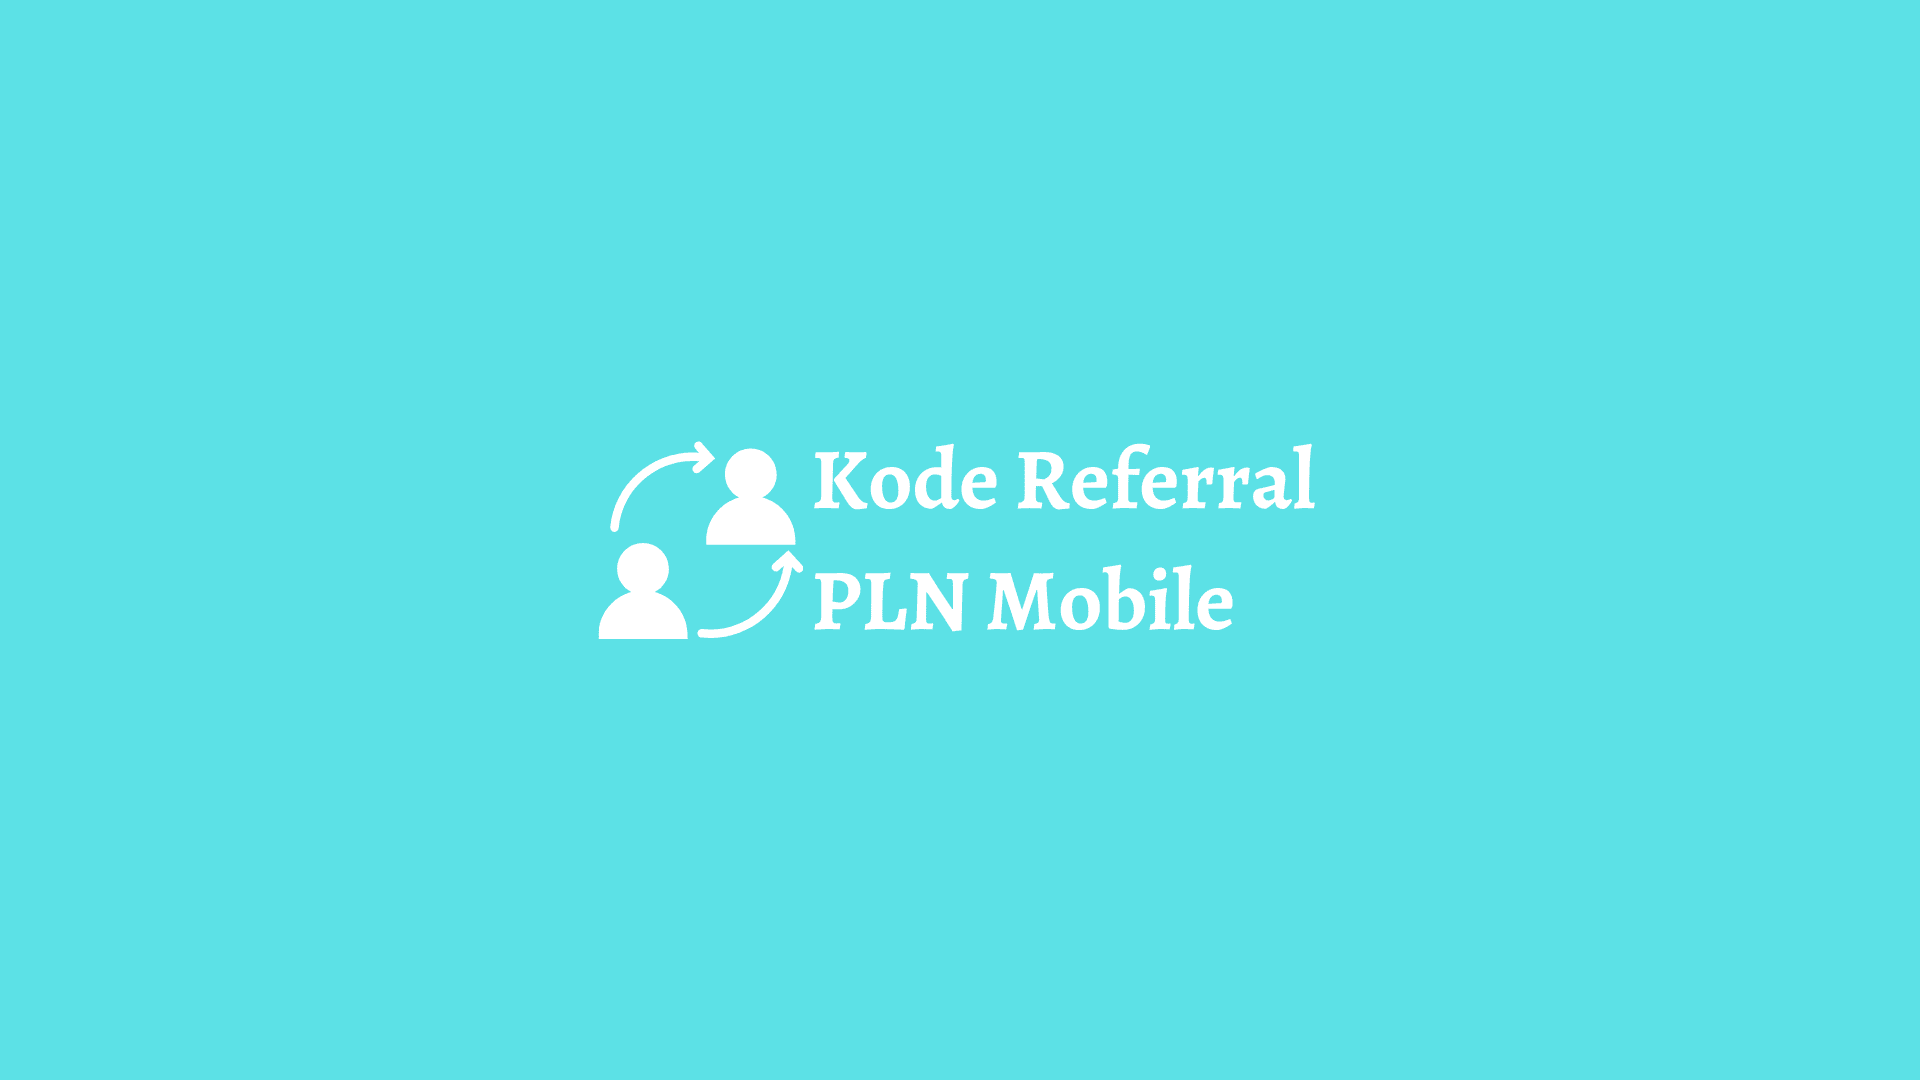 kode referral pln mobile